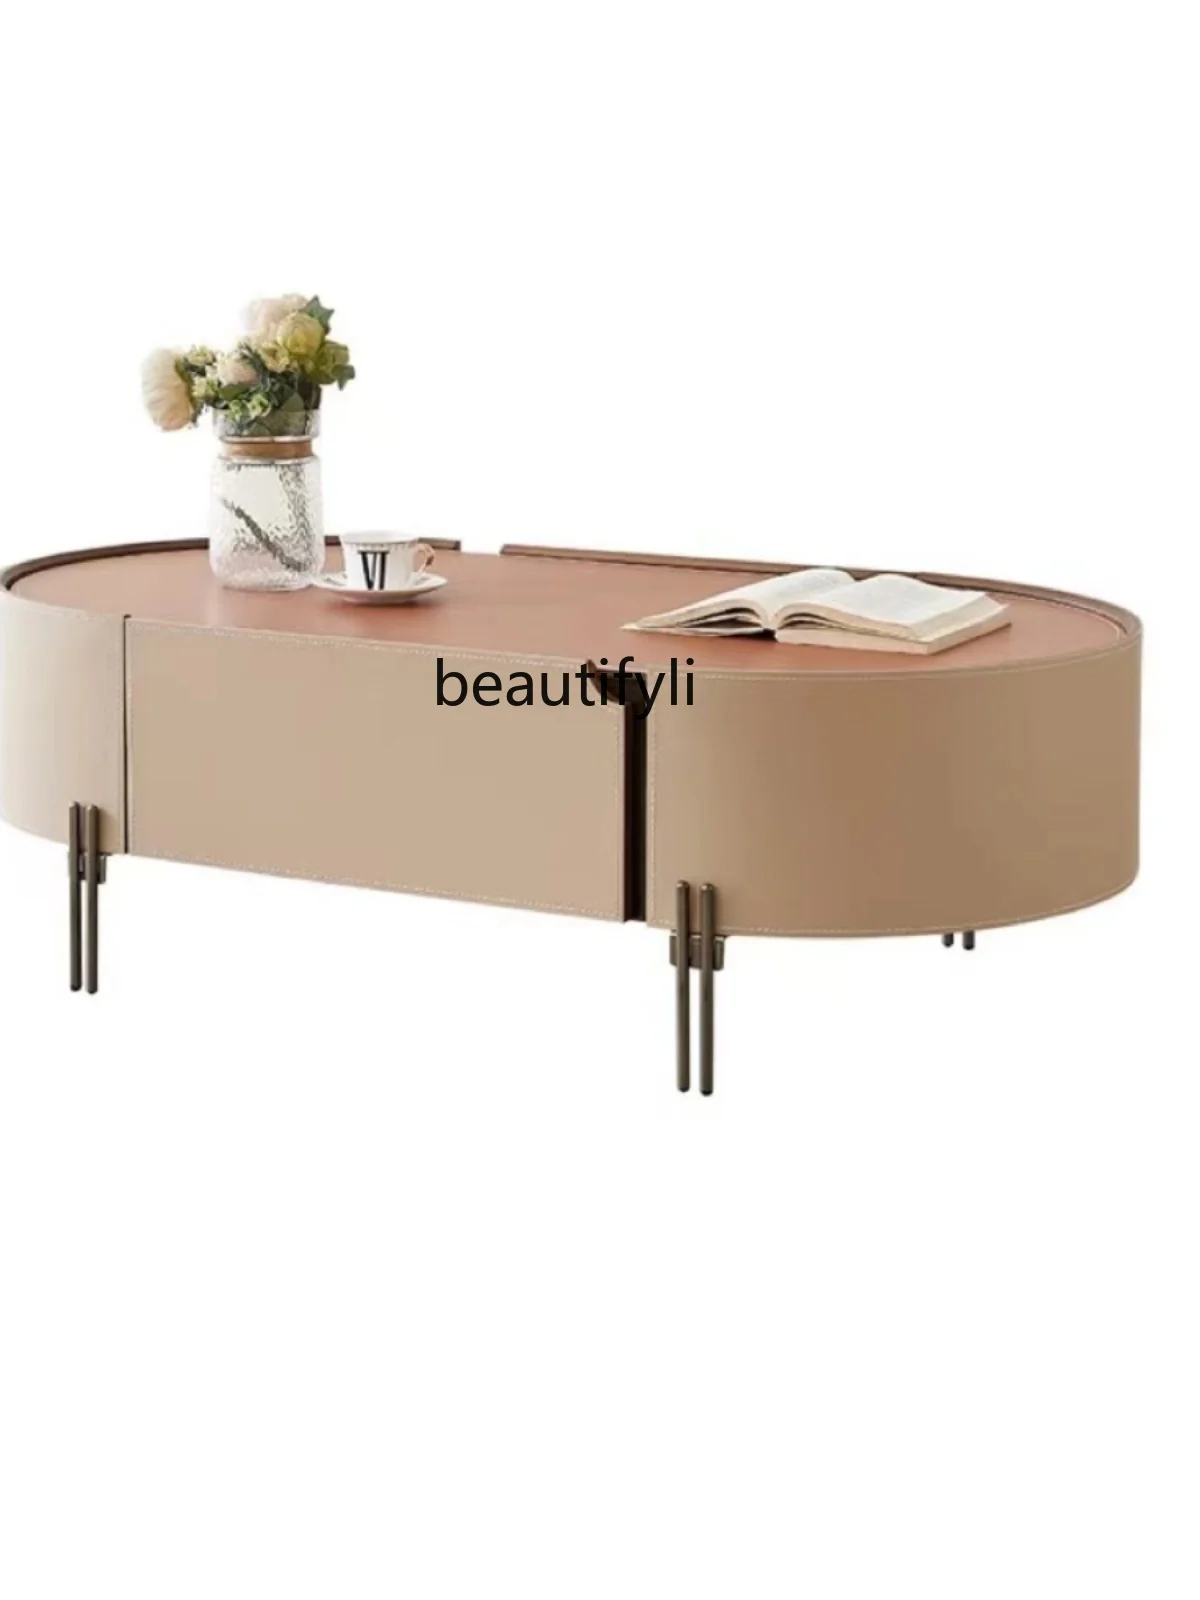 

Italian Minimalist Coffee Table Affordable Luxury Style Side Table Creative PU Leather Living Room Oval Tea Table Storage